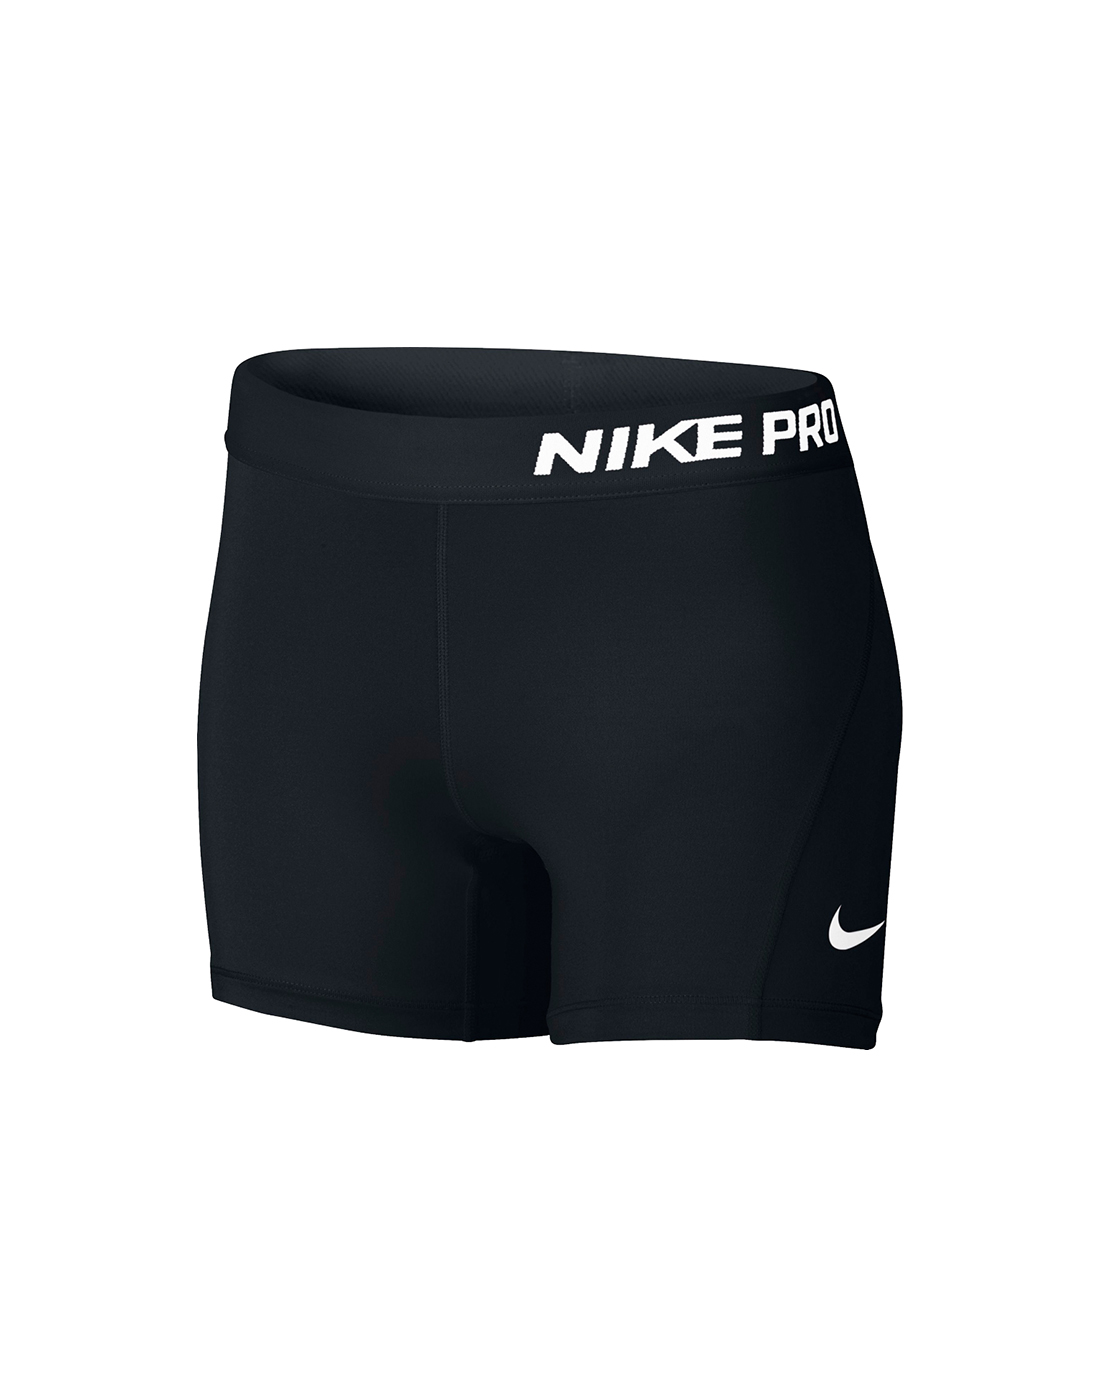 nike pro shorts old style